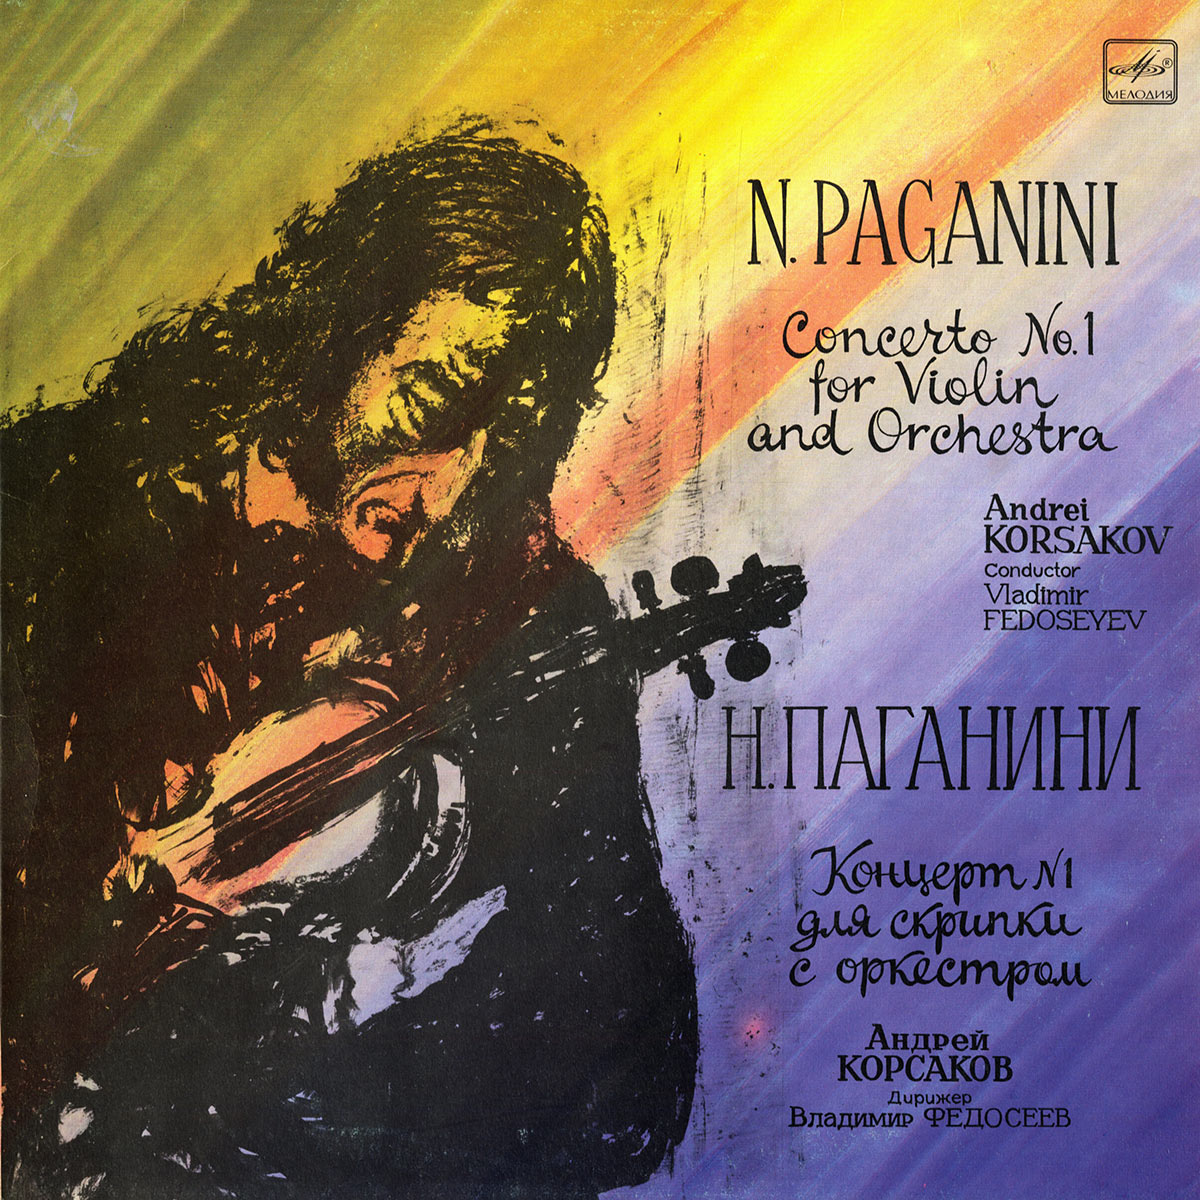 Н. ПАГАНИНИ (1782-1840): Концерт № 1 для скрипки с оркестром ре мажор, соч. 6.